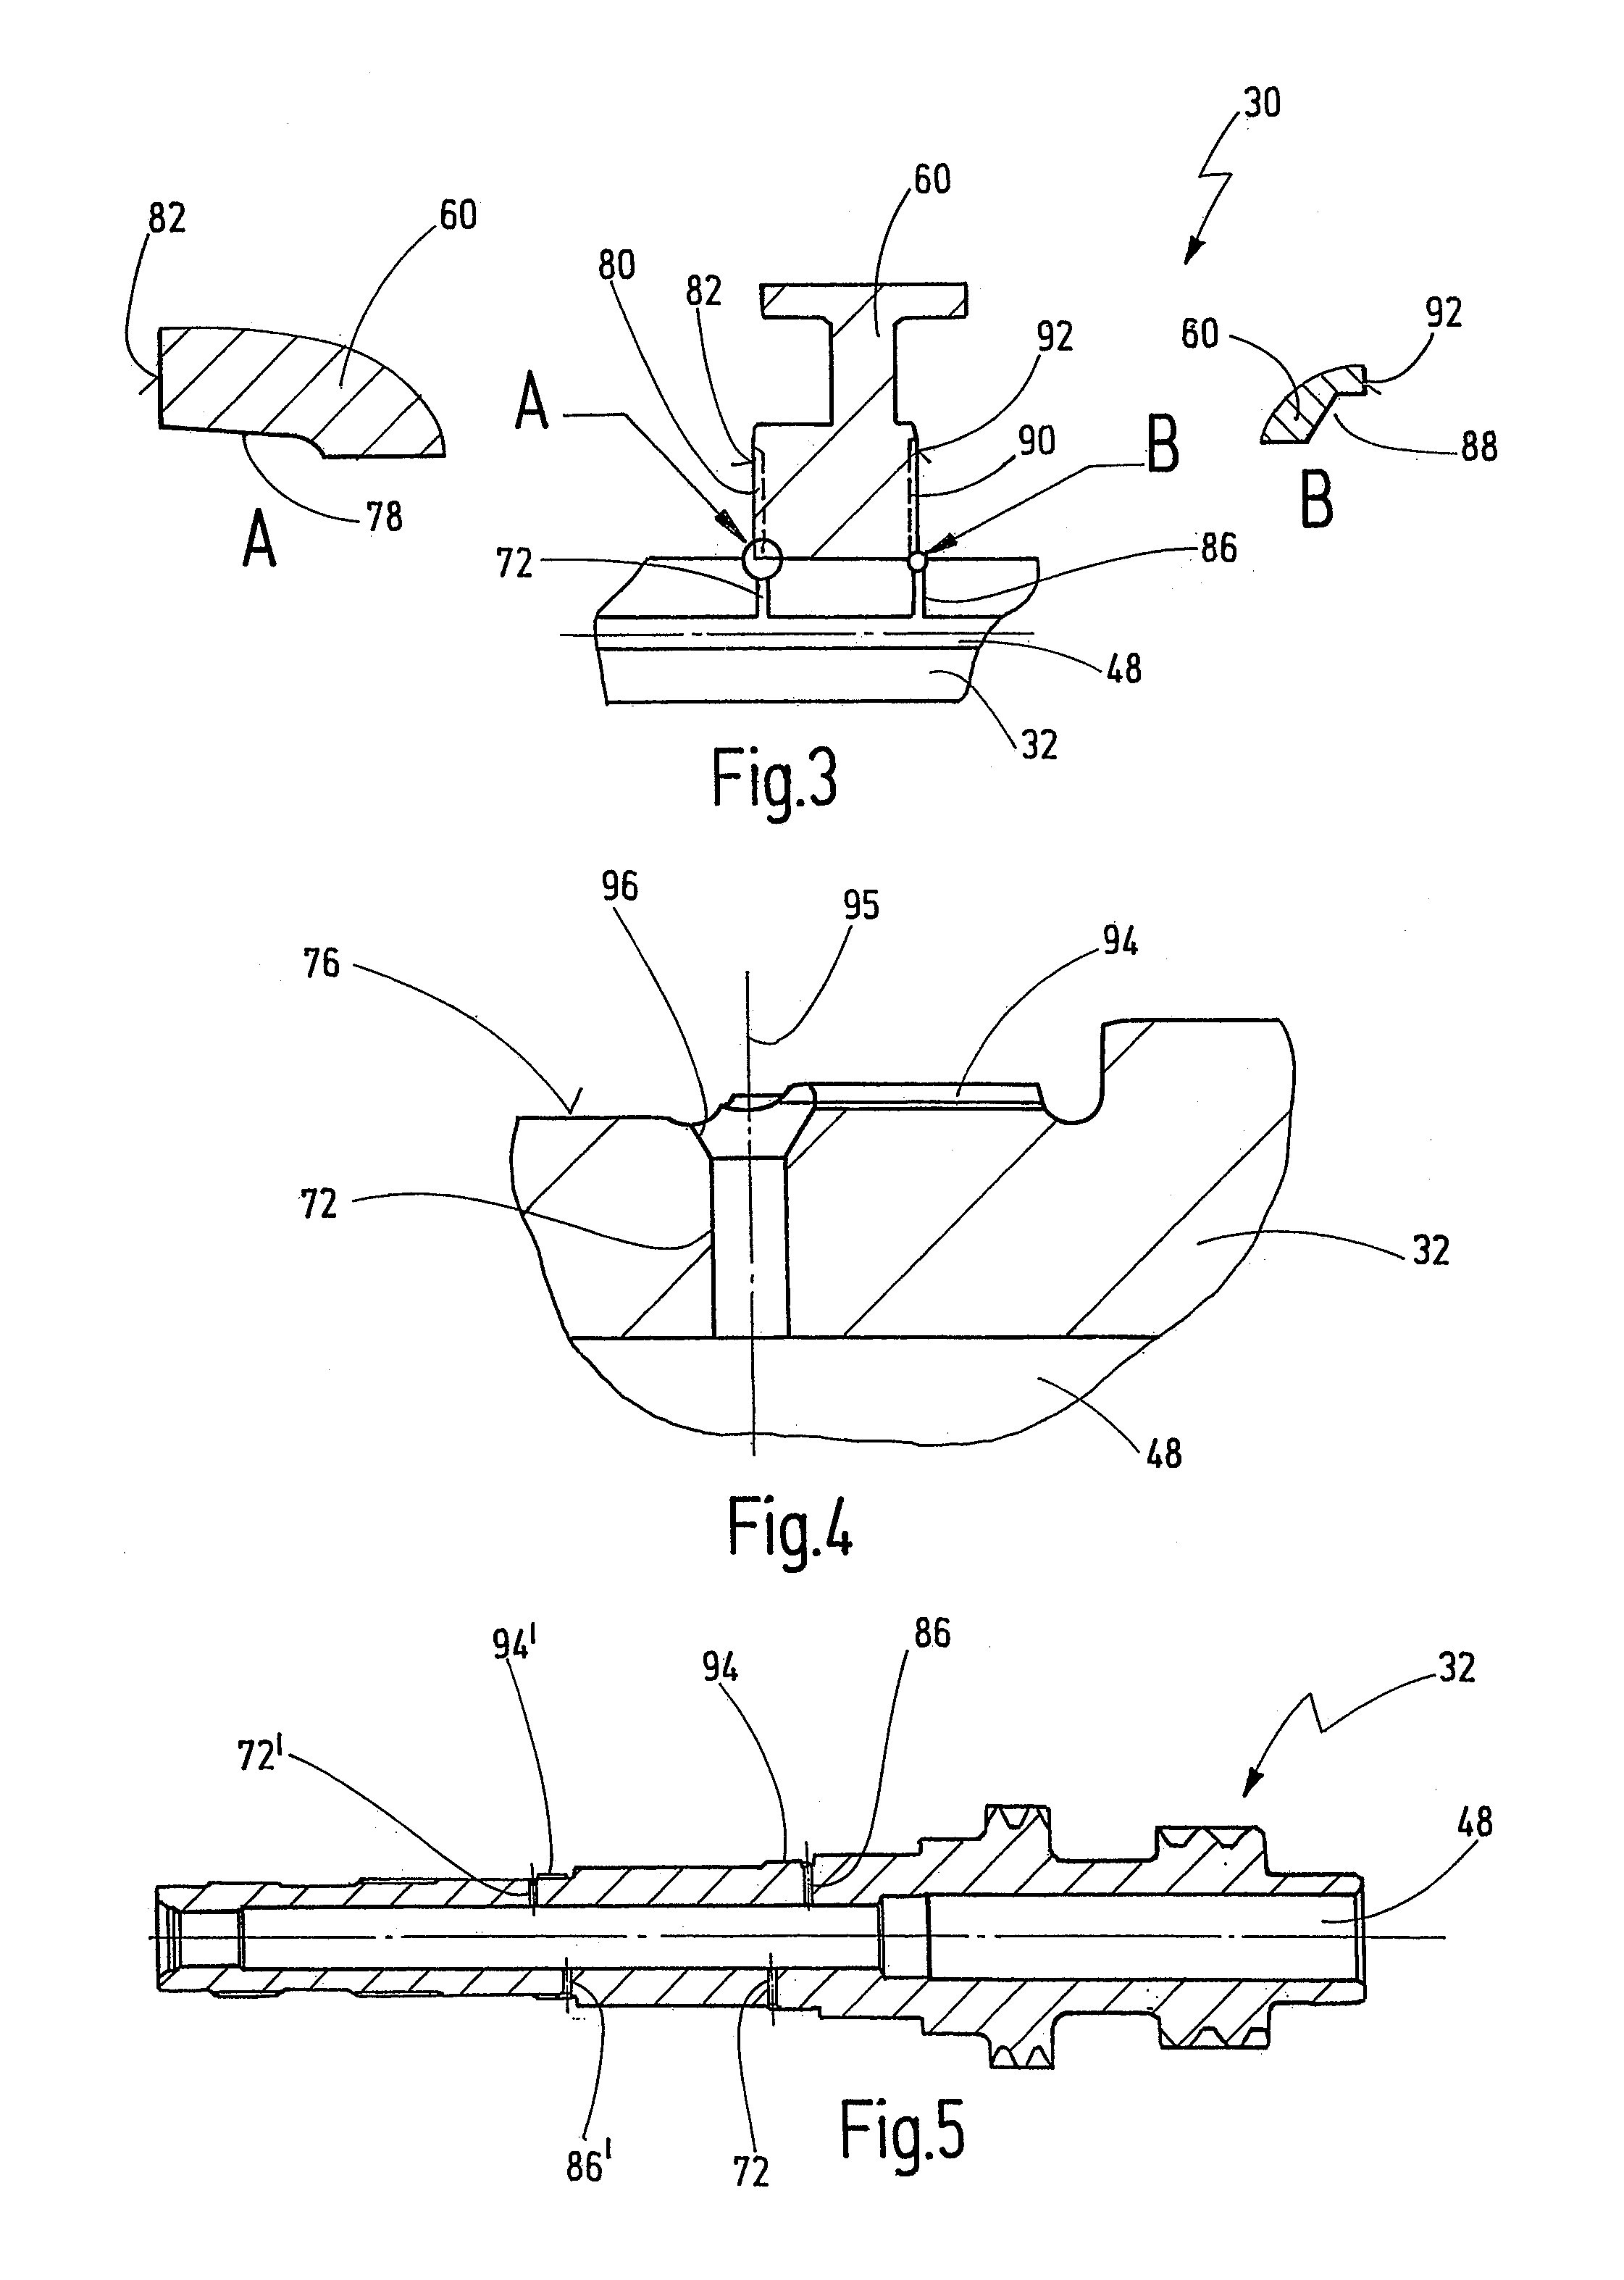 Shaft arrangement for a transmission